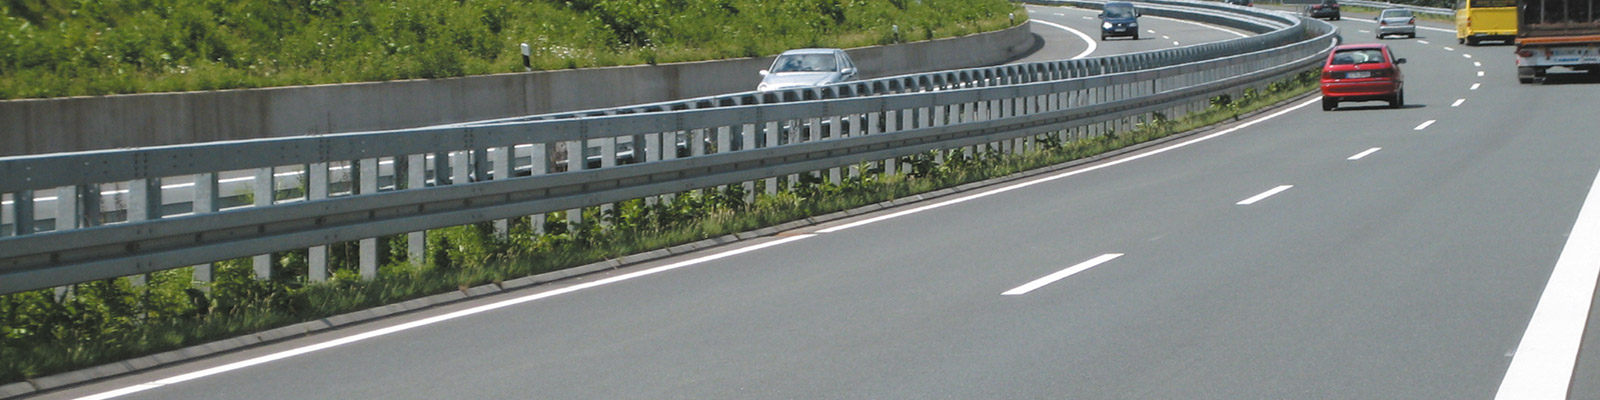 Ein Teil einer Autobahn mit dem Fokus auf der Leitplanke.